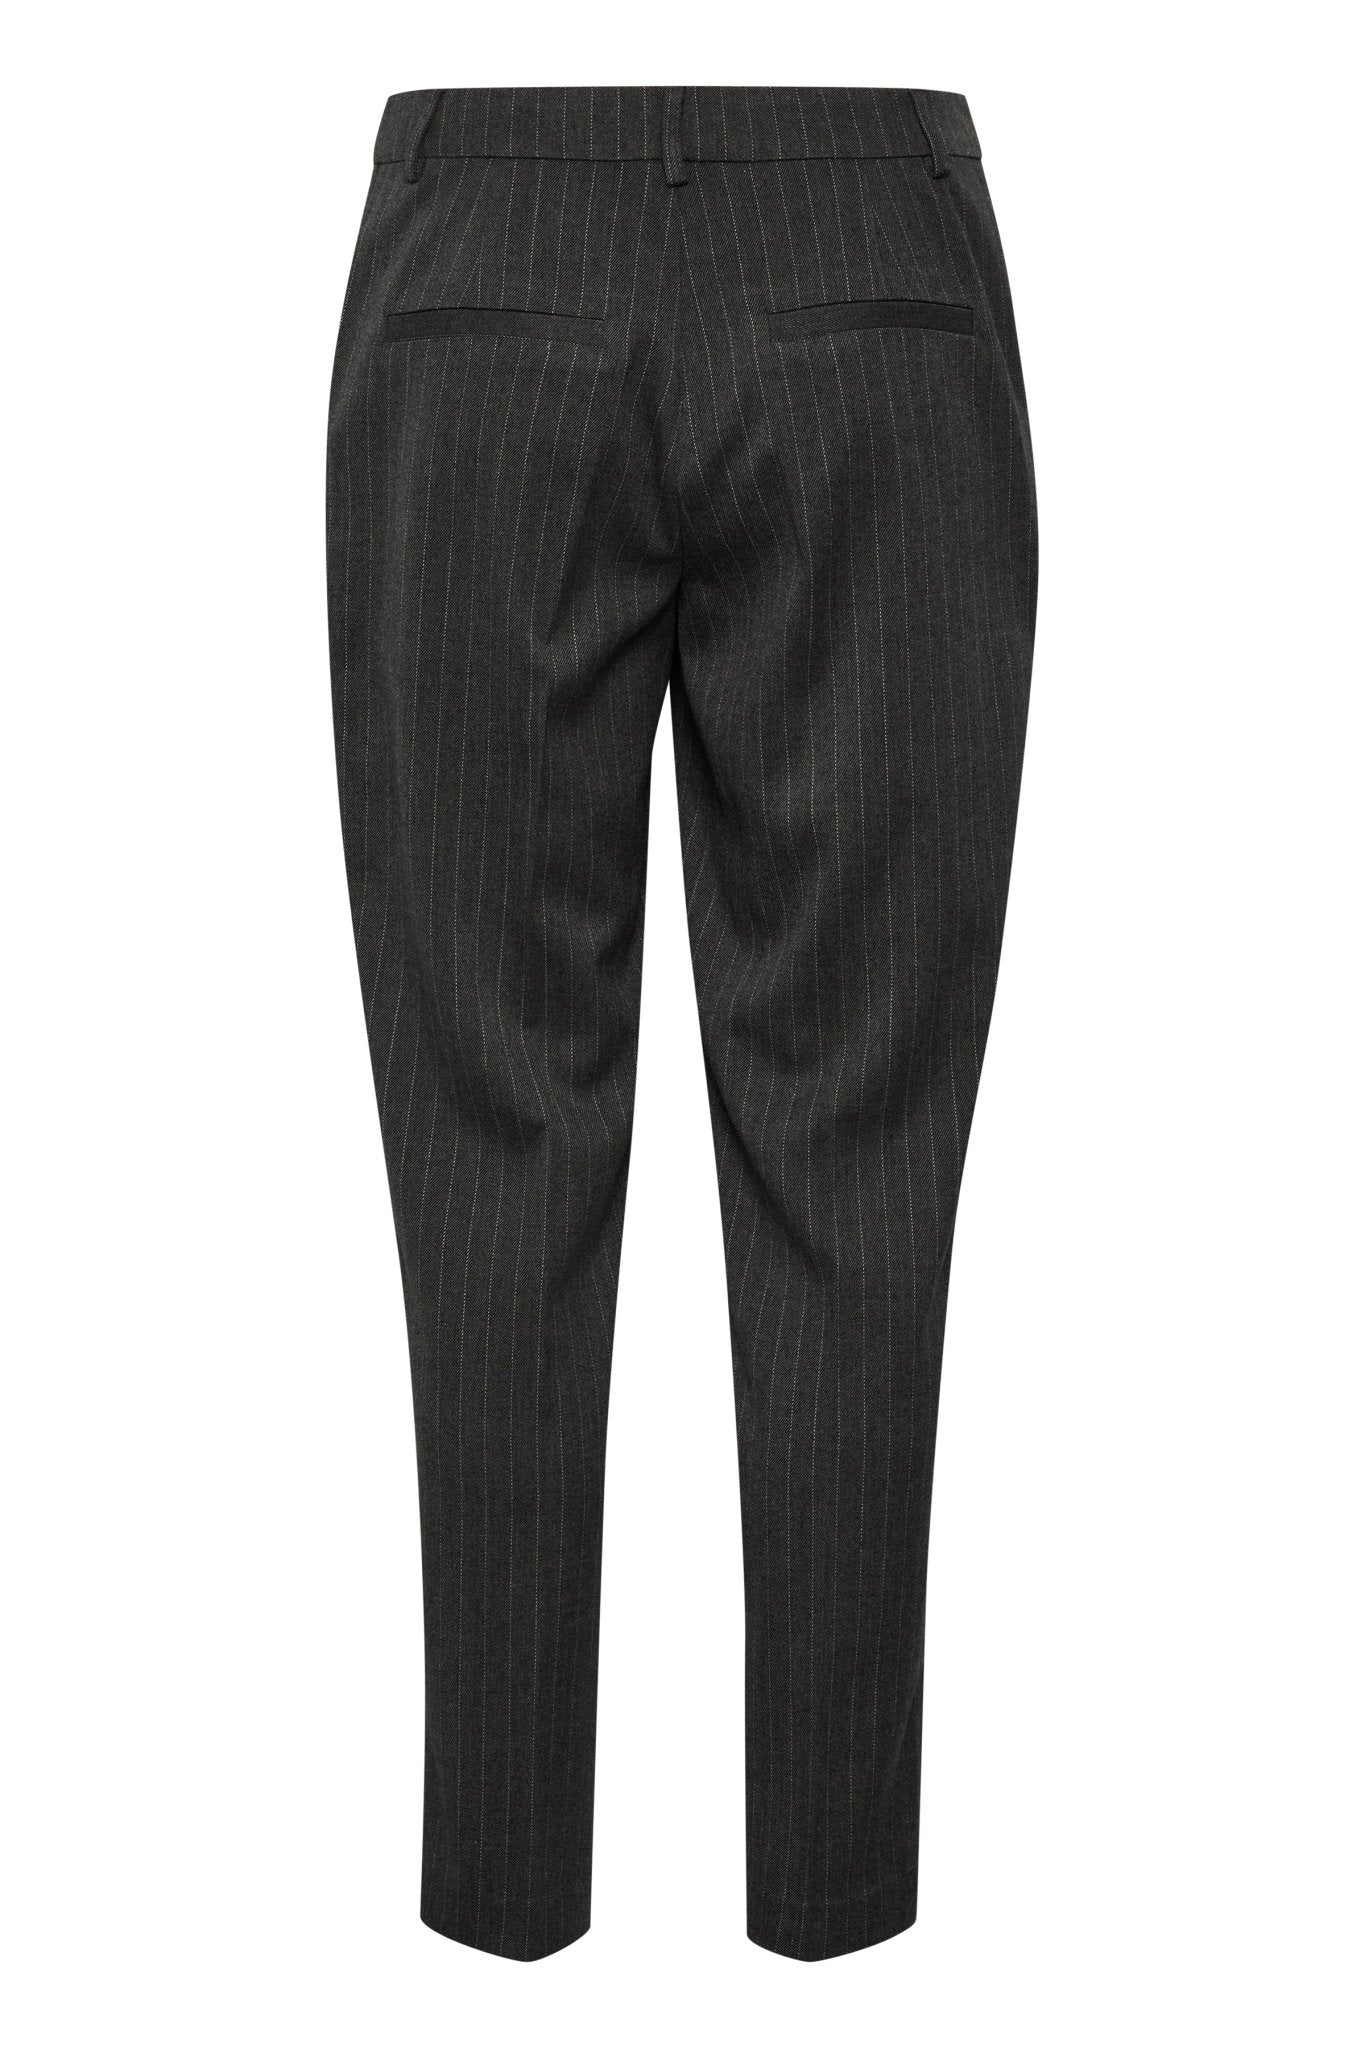 Navan Ankle Pants - melange grey pinstripe - Blue Sky Clothing & Lingerie